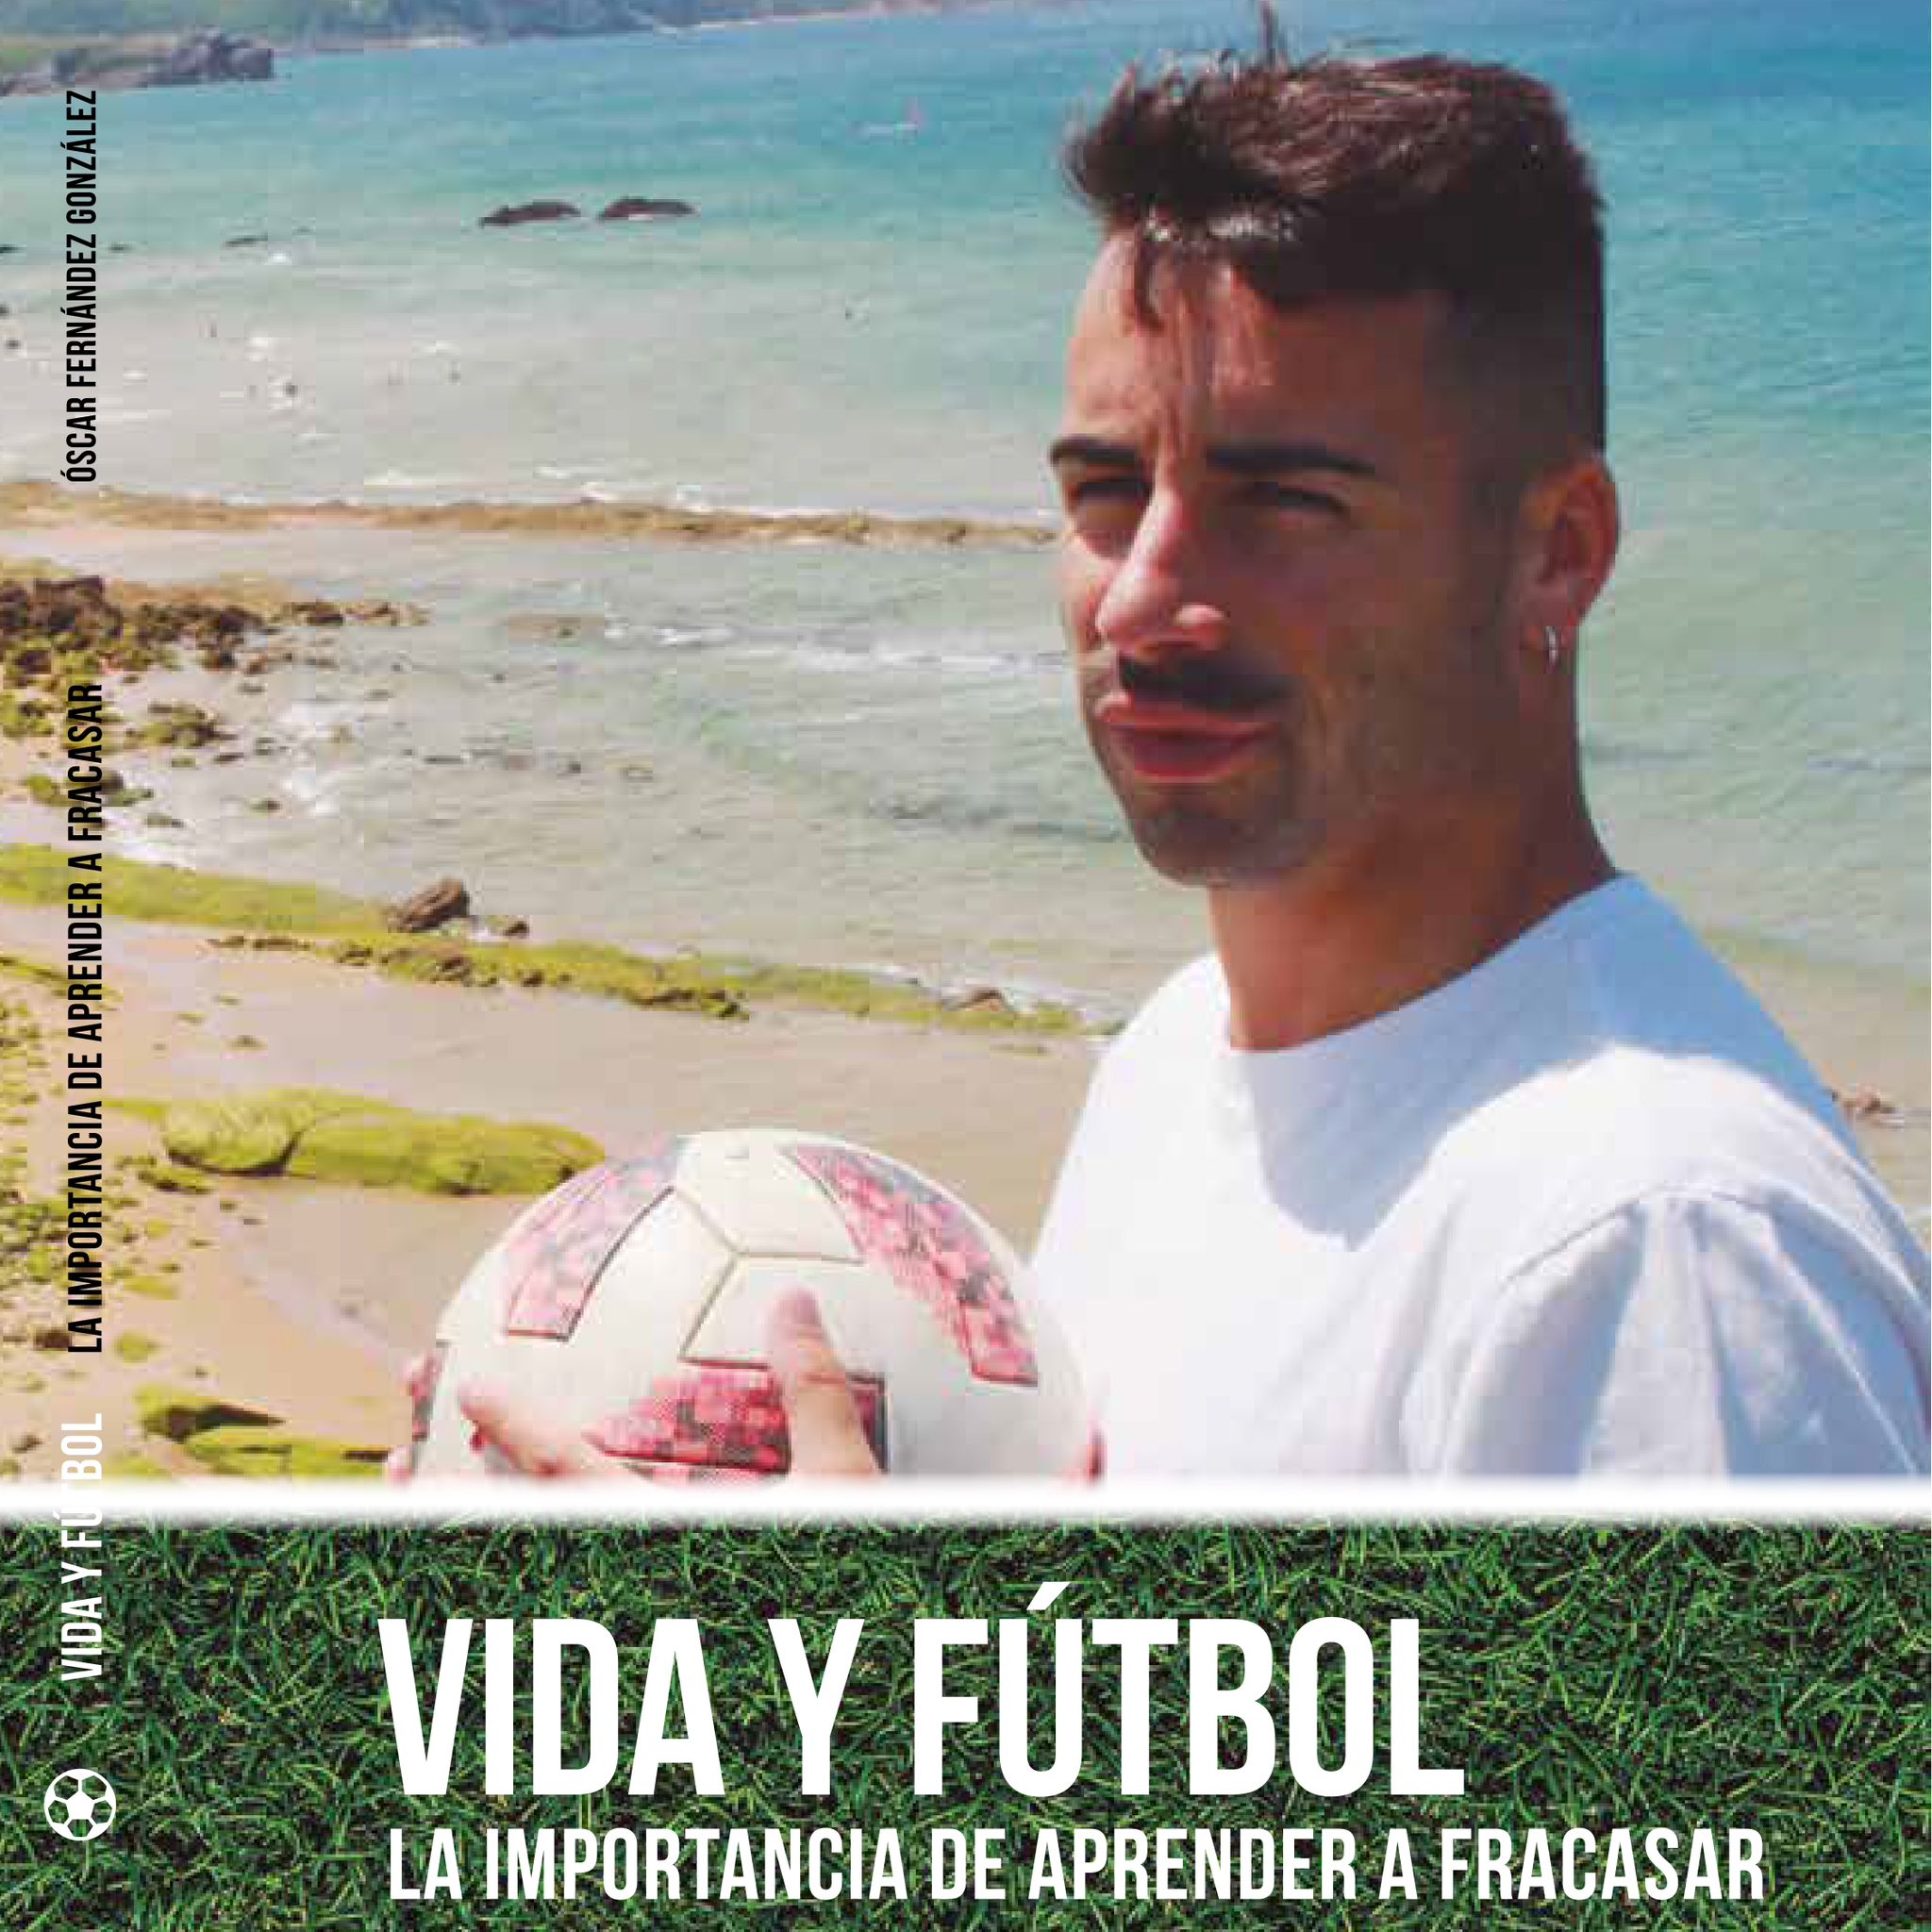 "Vida y fútbol: La importancia de aprender a fracasar" el libro de Óscar Fernández González